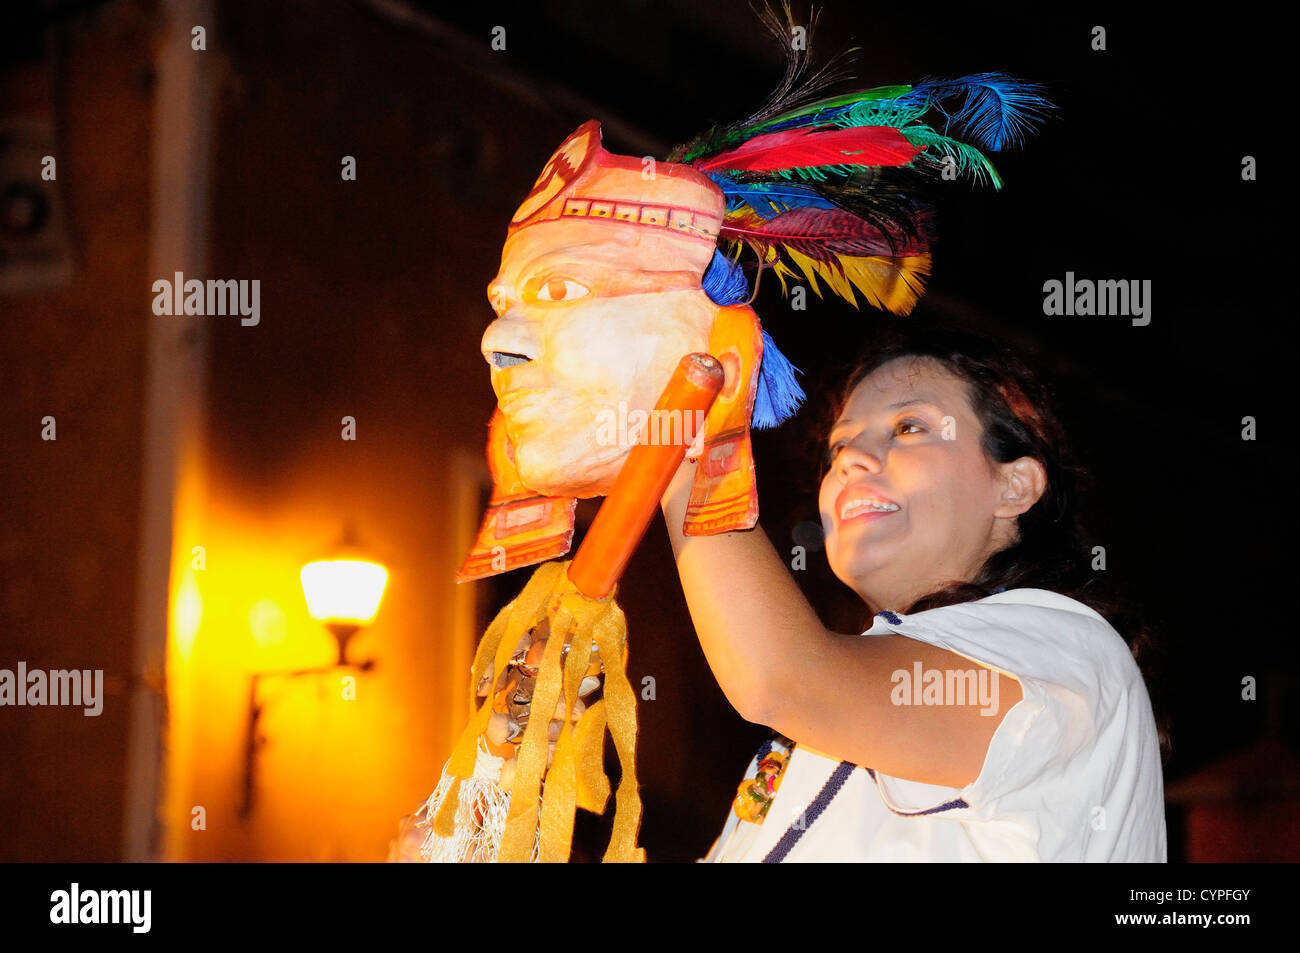 Acteur prenant part à des performances de rue pendant le festival Cervantino Cultures culturelles américaines l'Amérique latine hispanique Banque D'Images